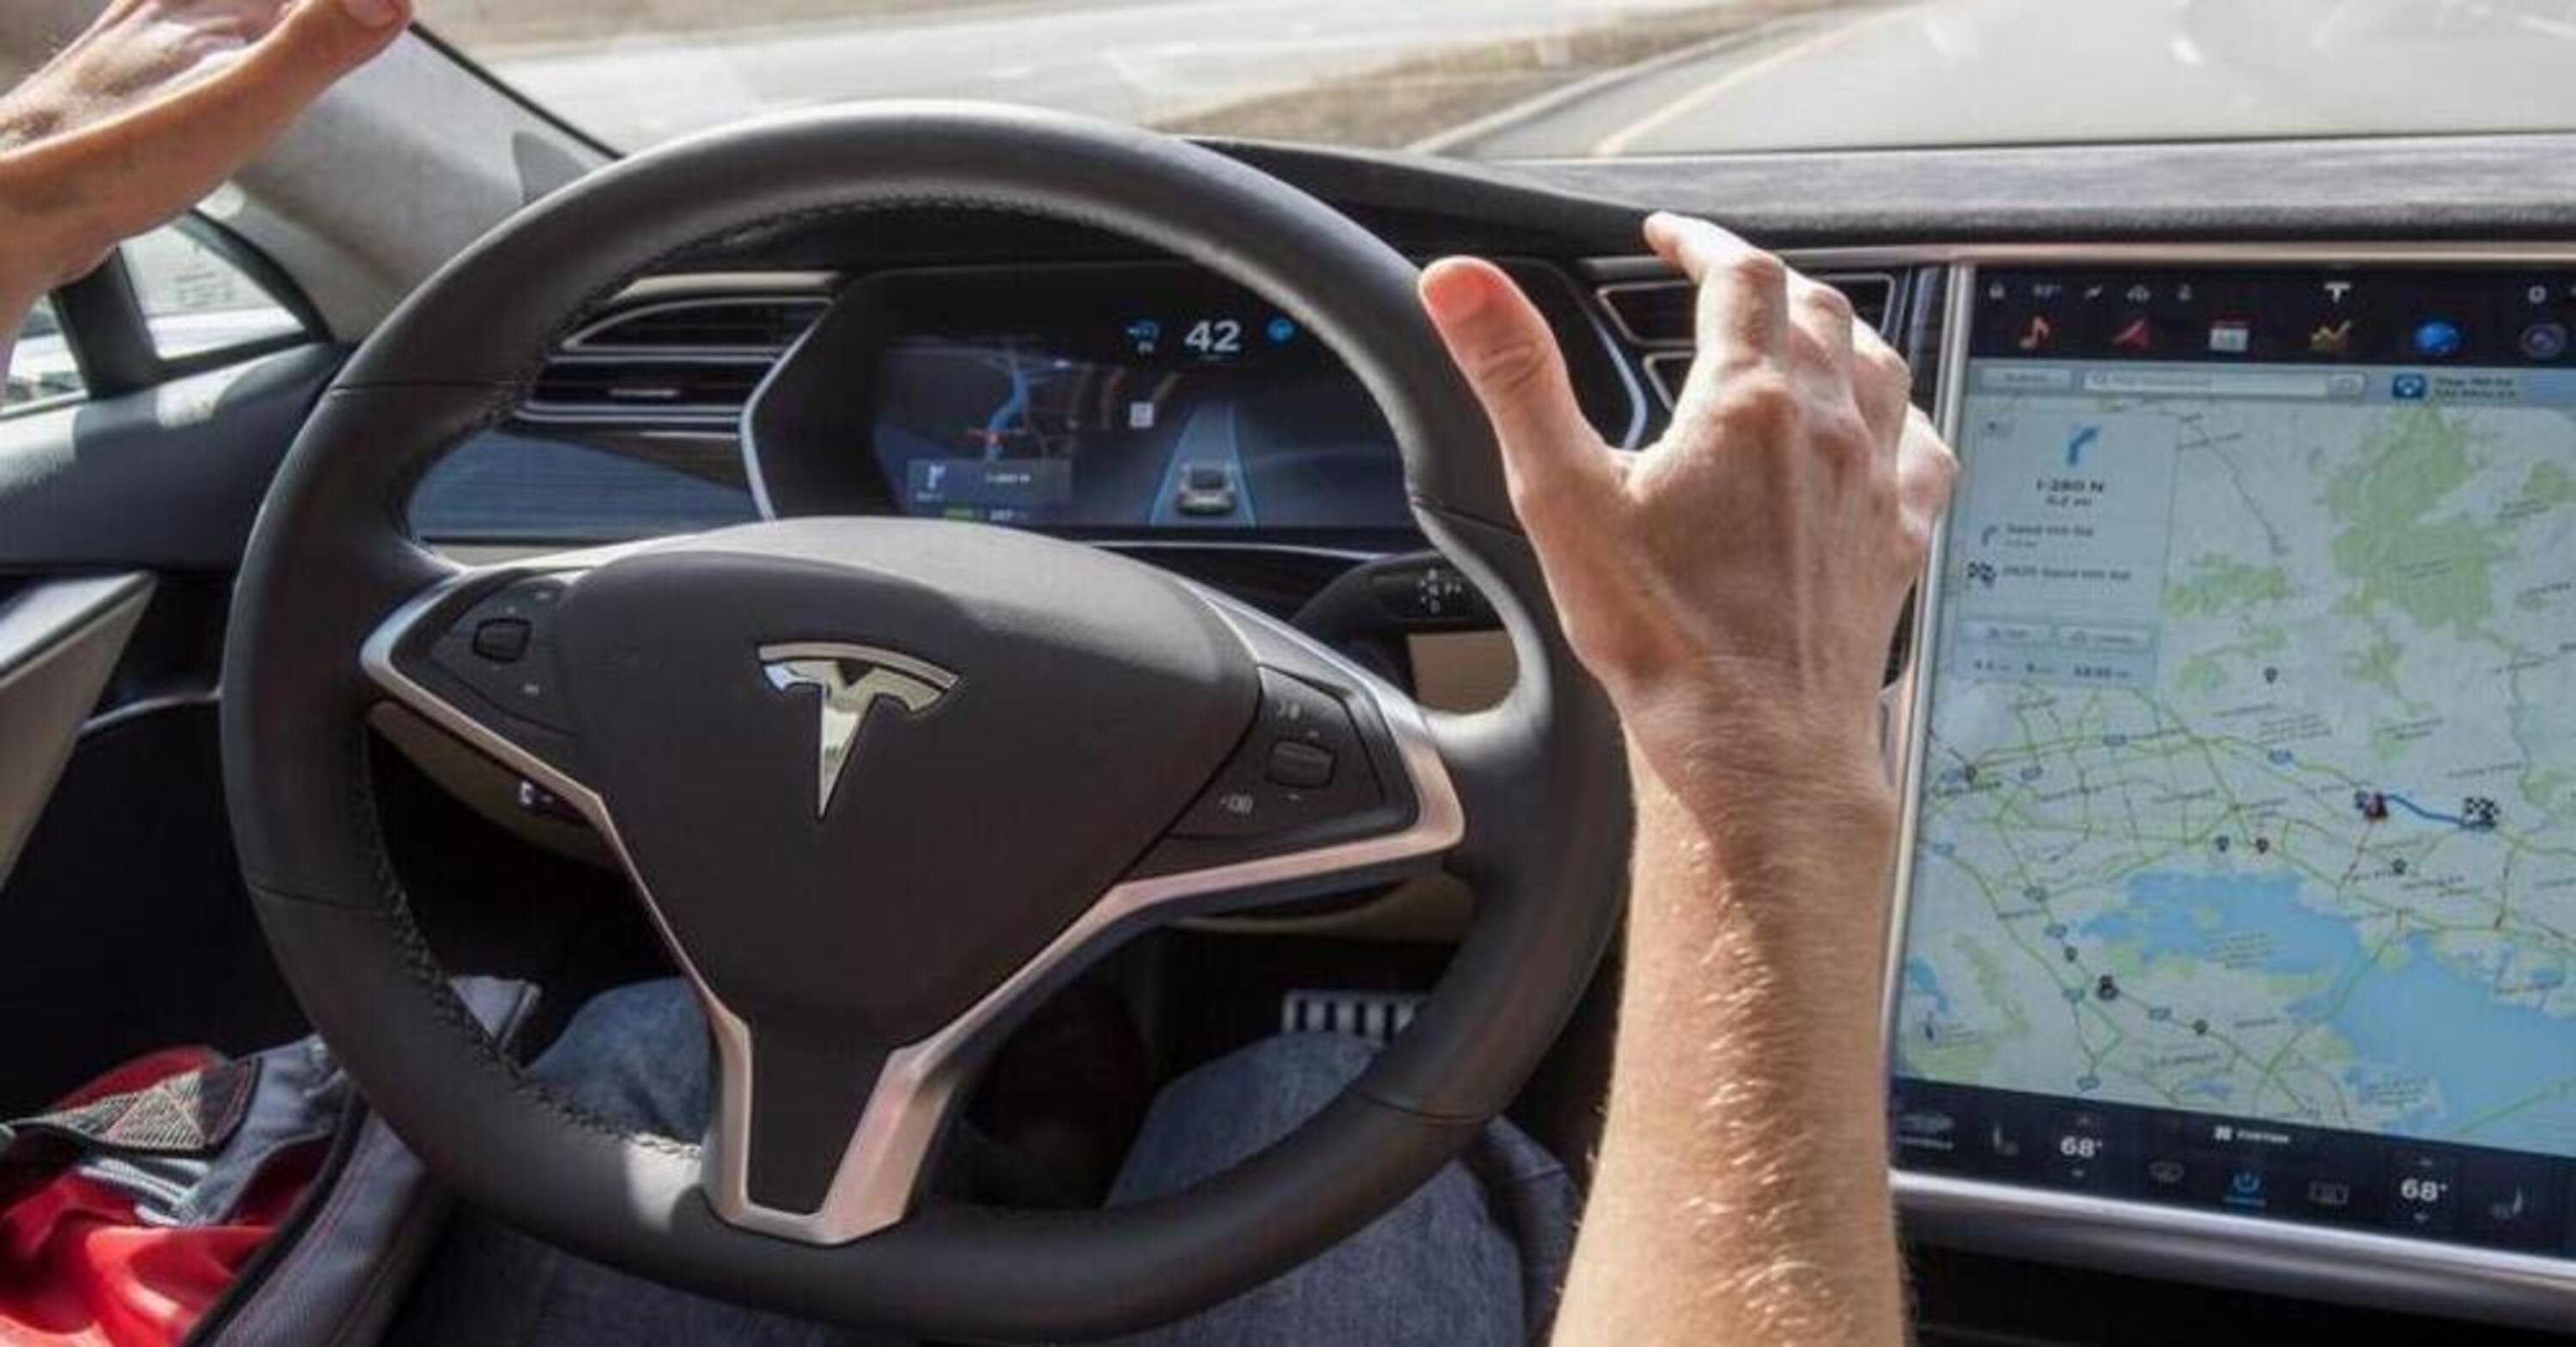 Full Self Driving di Tesla: ecco tutte le ultime novit&agrave; sulla guida autonoma firmata Elon Musk